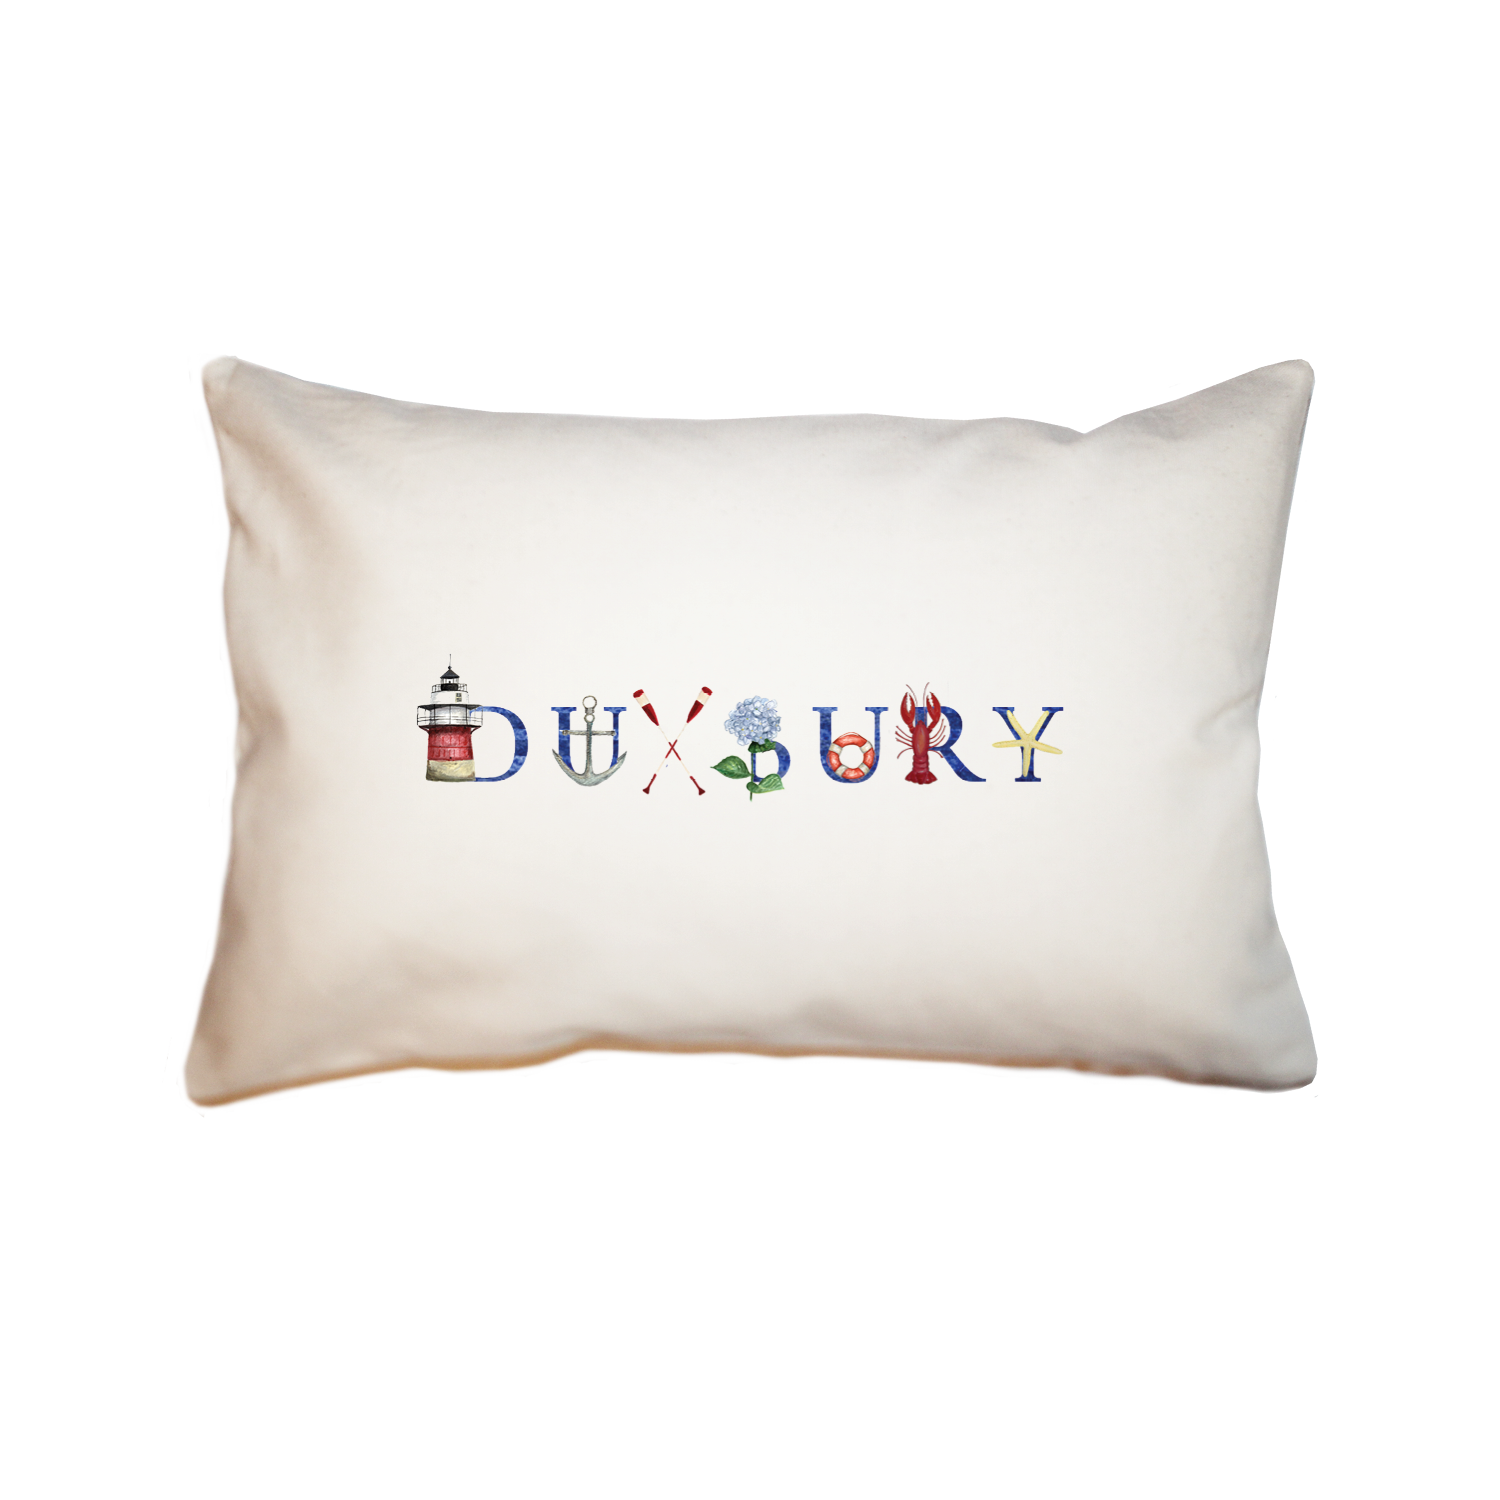 Duxbury large rectangle pillow